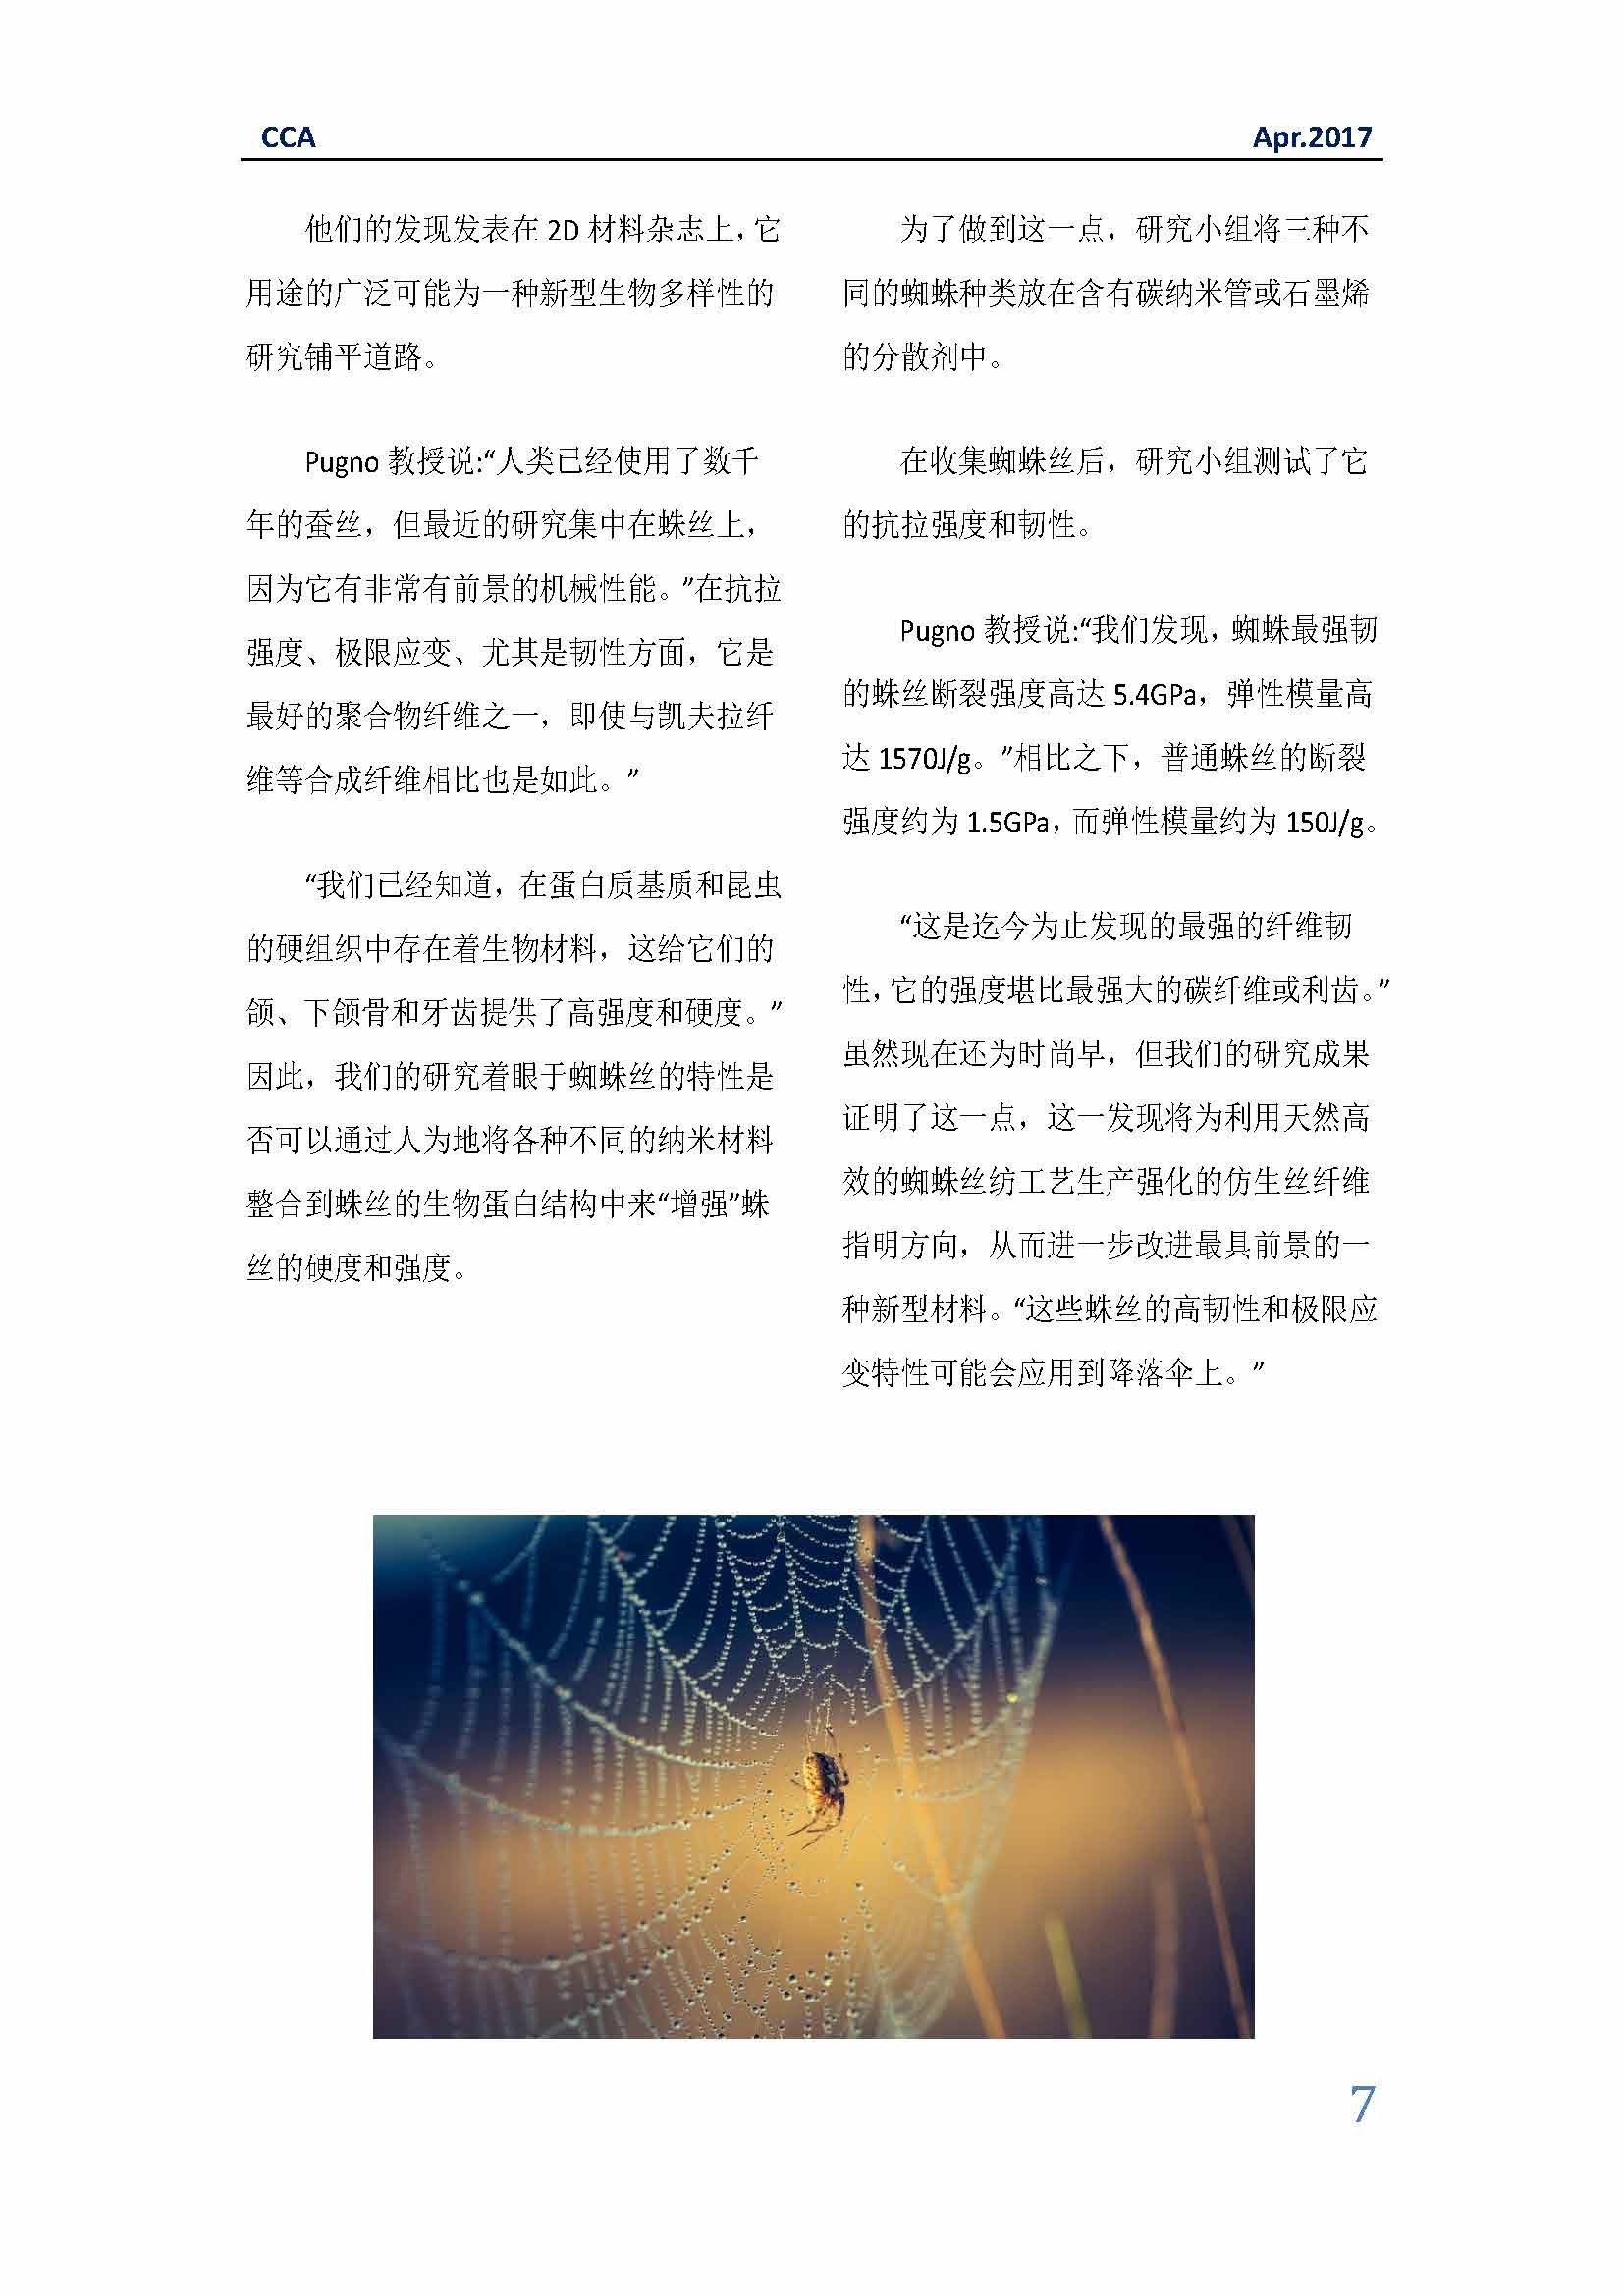 中国科技咨询协会国际快讯（第二十九期）_页面_07.jpg